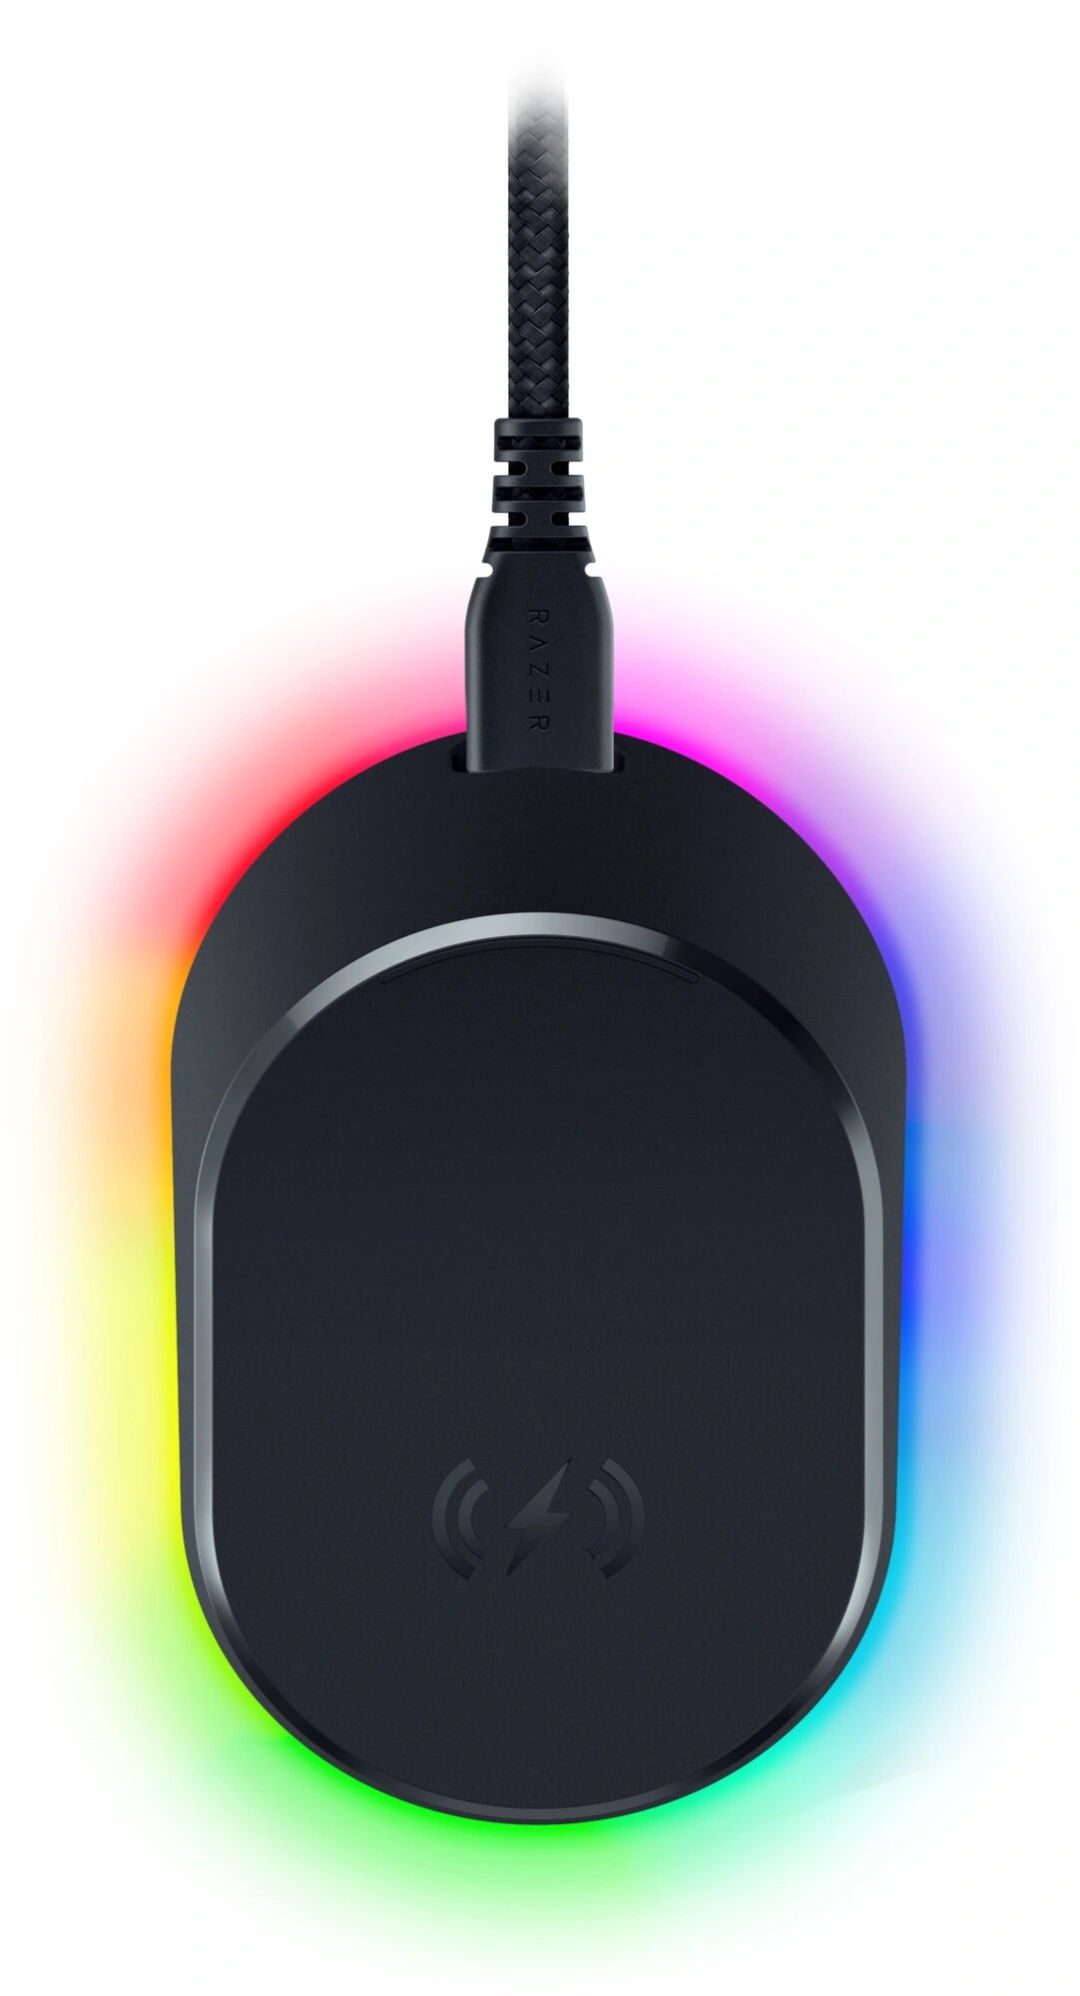 Razer Mouse Dock Pro + Wireless Charging Puck Bundle, kompatibilní s Basilisk V3 Pro